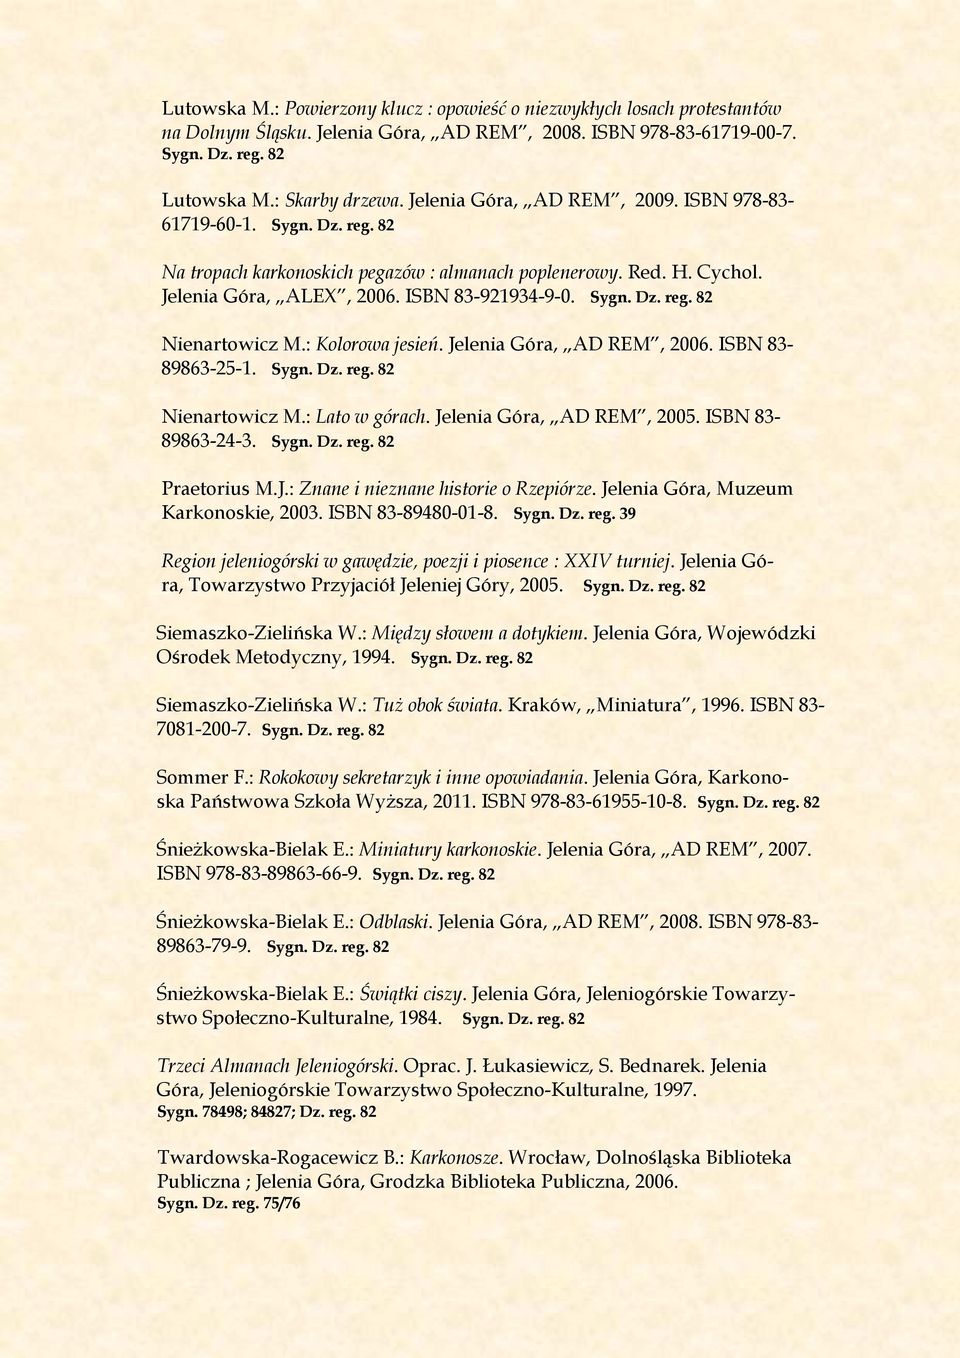 : Kolorowa jesień. Jelenia Góra, AD REM, 2006. ISBN 83-89863-25-1. Sygn. Dz. reg. 82 Nienartowicz M.: Lato w górach. Jelenia Góra, AD REM, 2005. ISBN 83-89863-24-3. Sygn. Dz. reg. 82 Praetorius M.J.: Znane i nieznane historie o Rzepiórze.